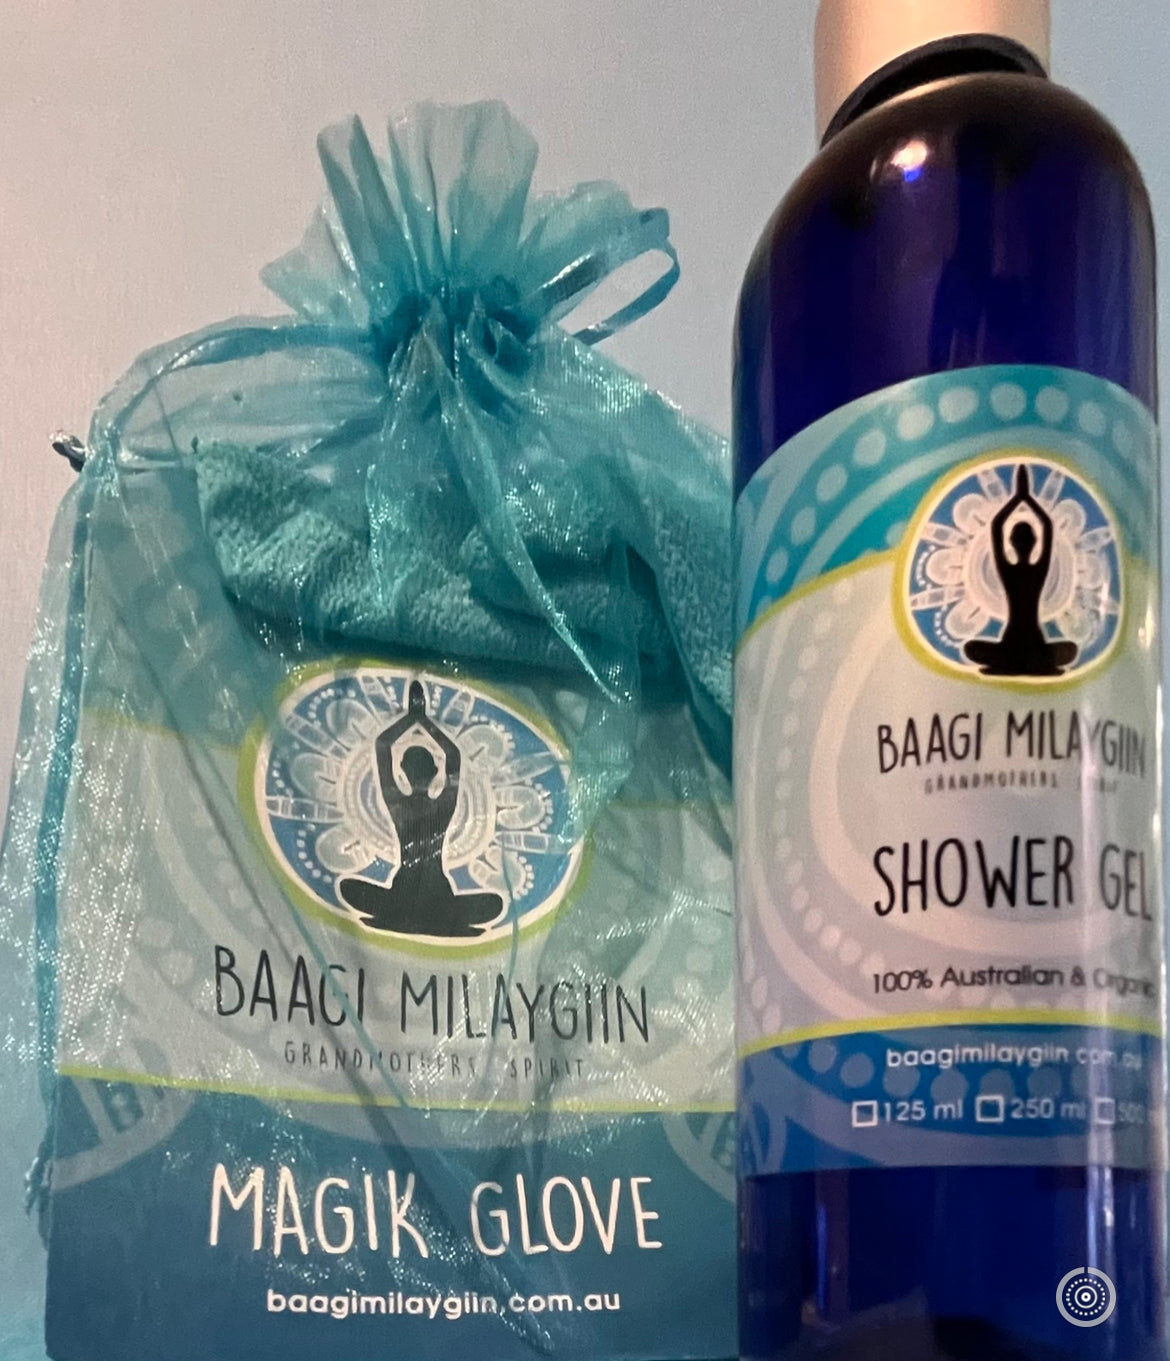 Shower Gel and Magik Glove